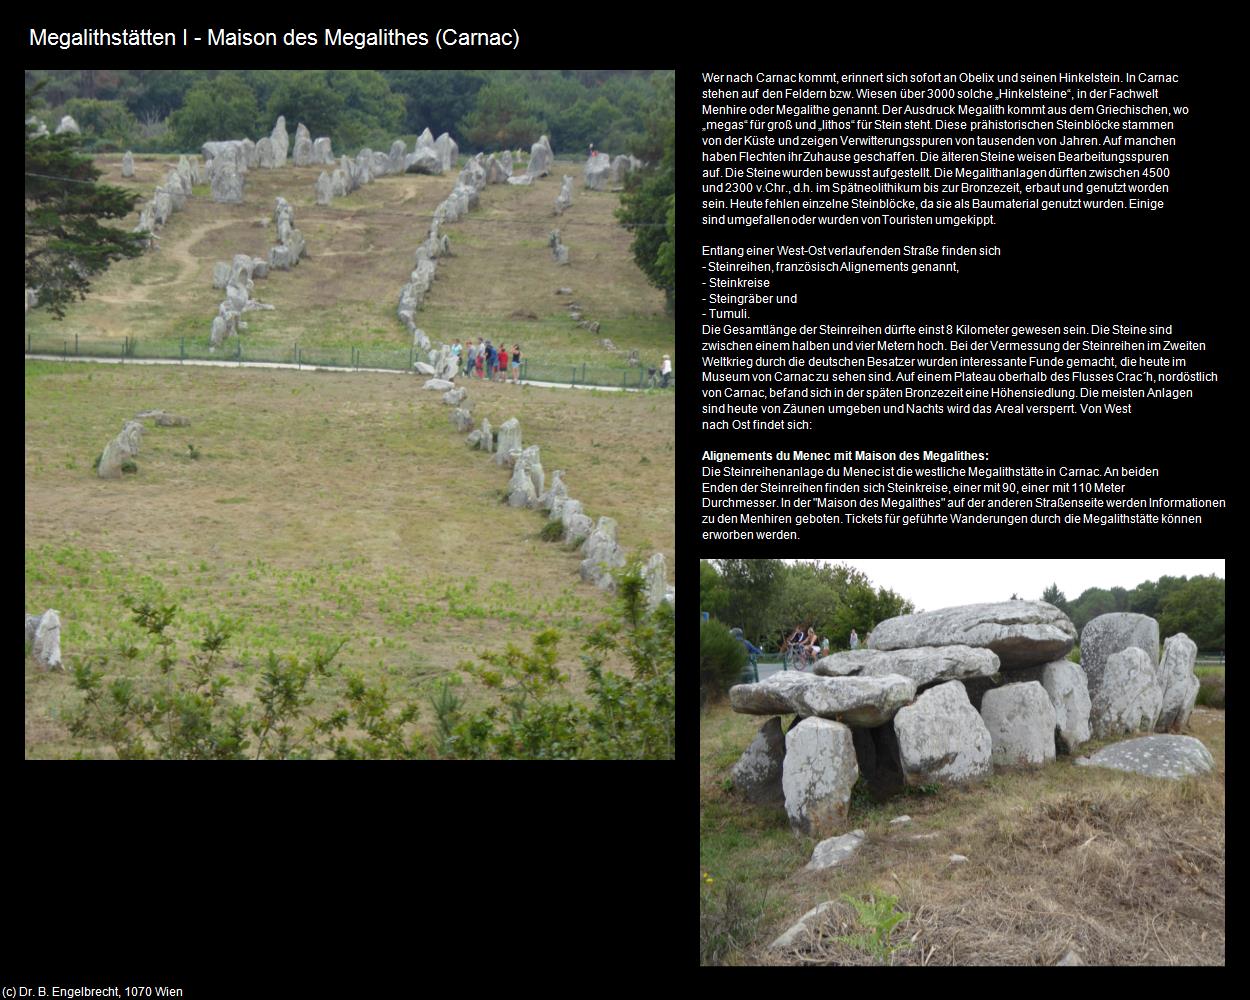 Megalithstätten I - Maison des Megalithes  (Carnac (FR-BRE)) in Kulturatlas-FRANKREICH